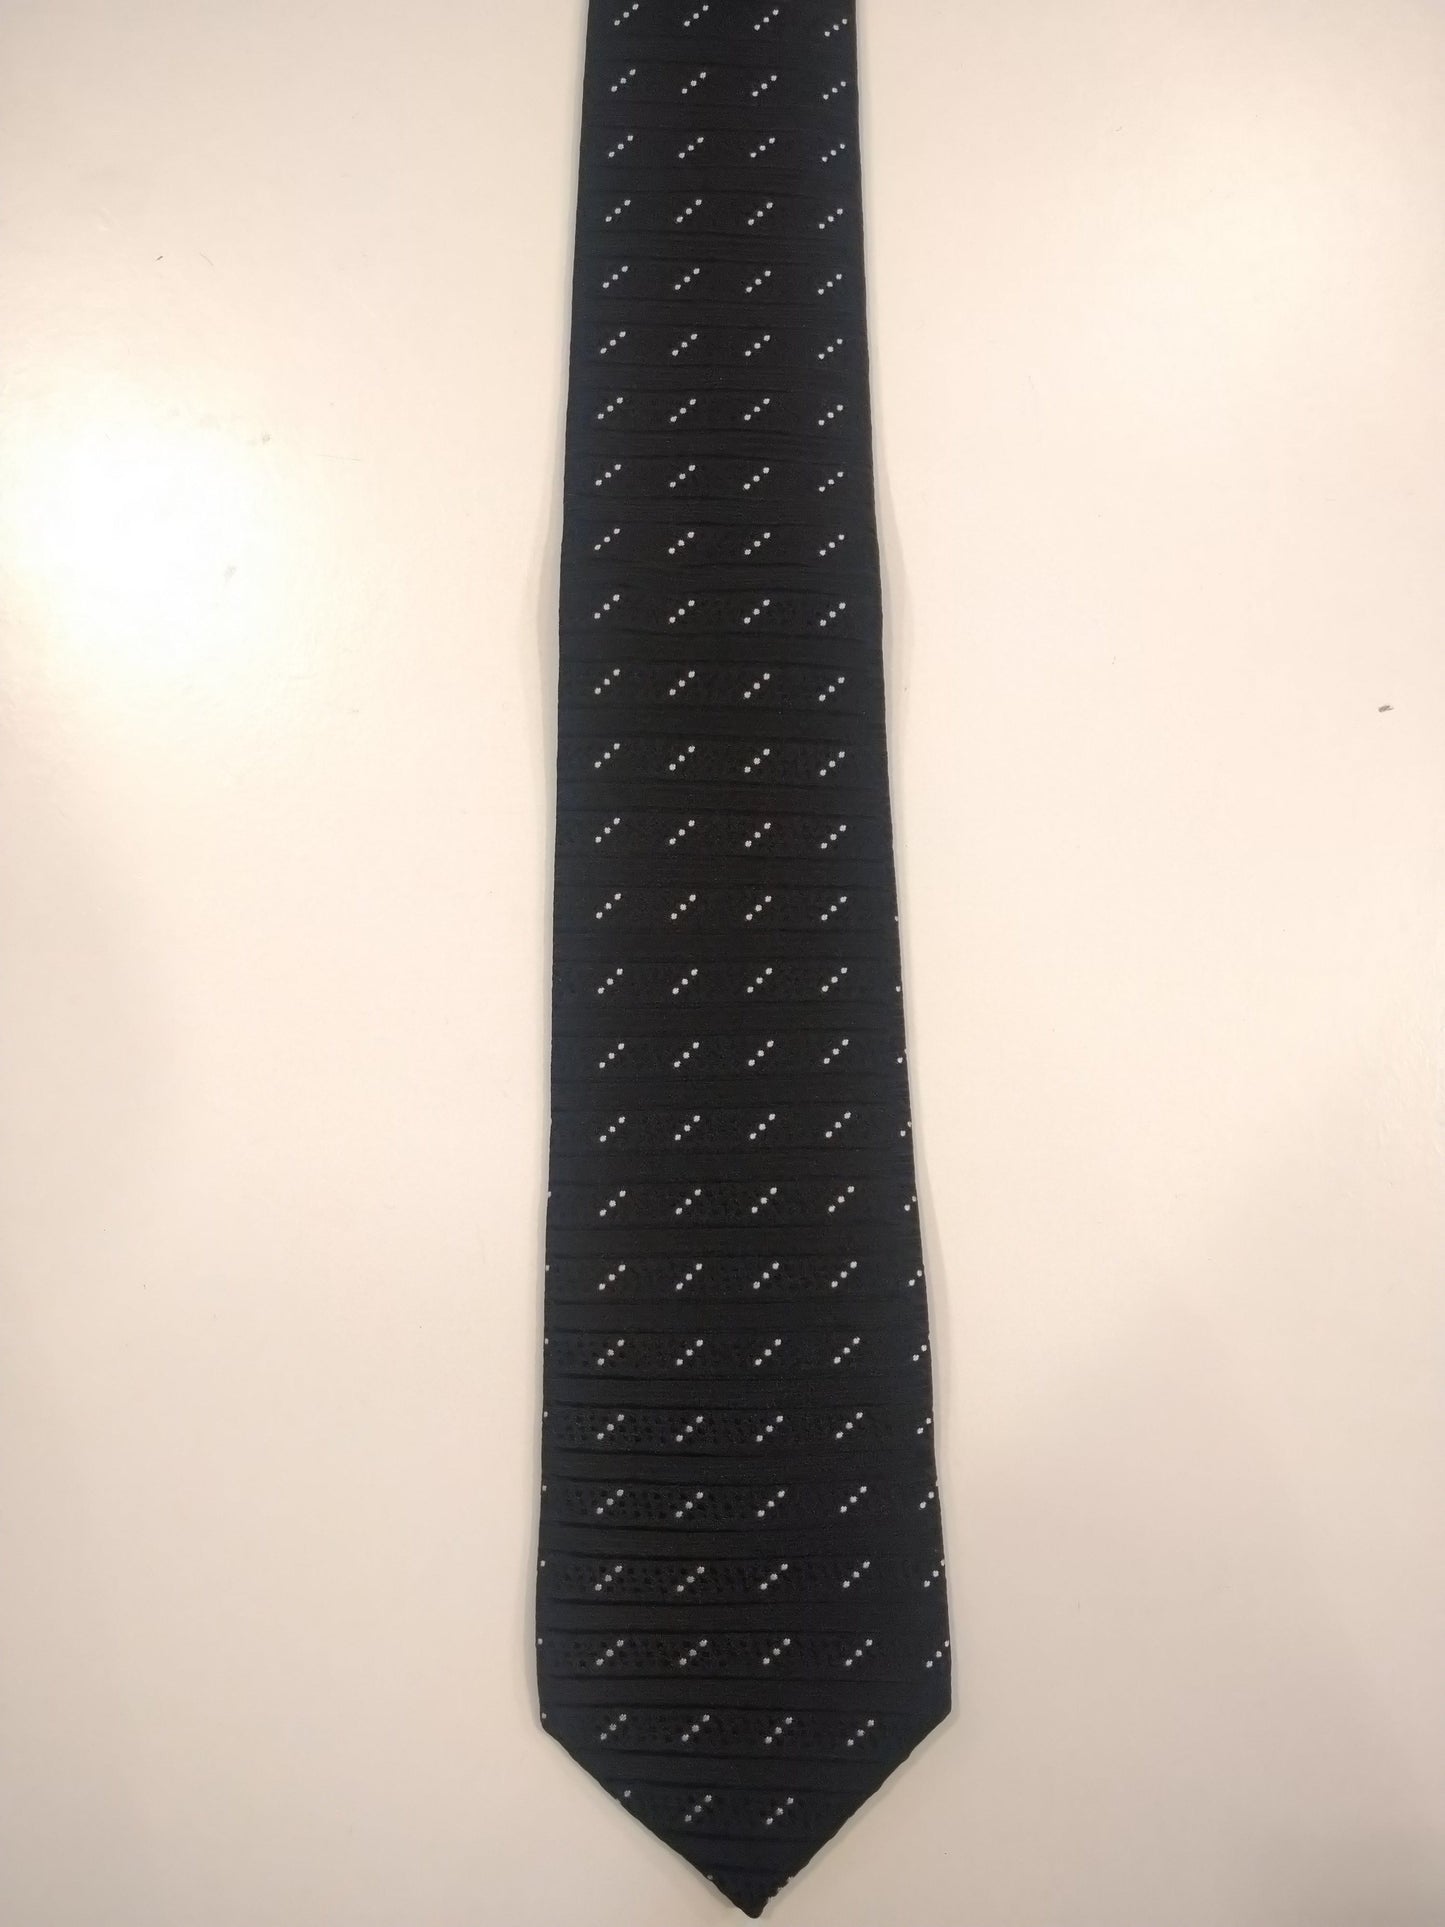 La corbata de poliéster de dragón. Motivo tangible en blanco y negro.